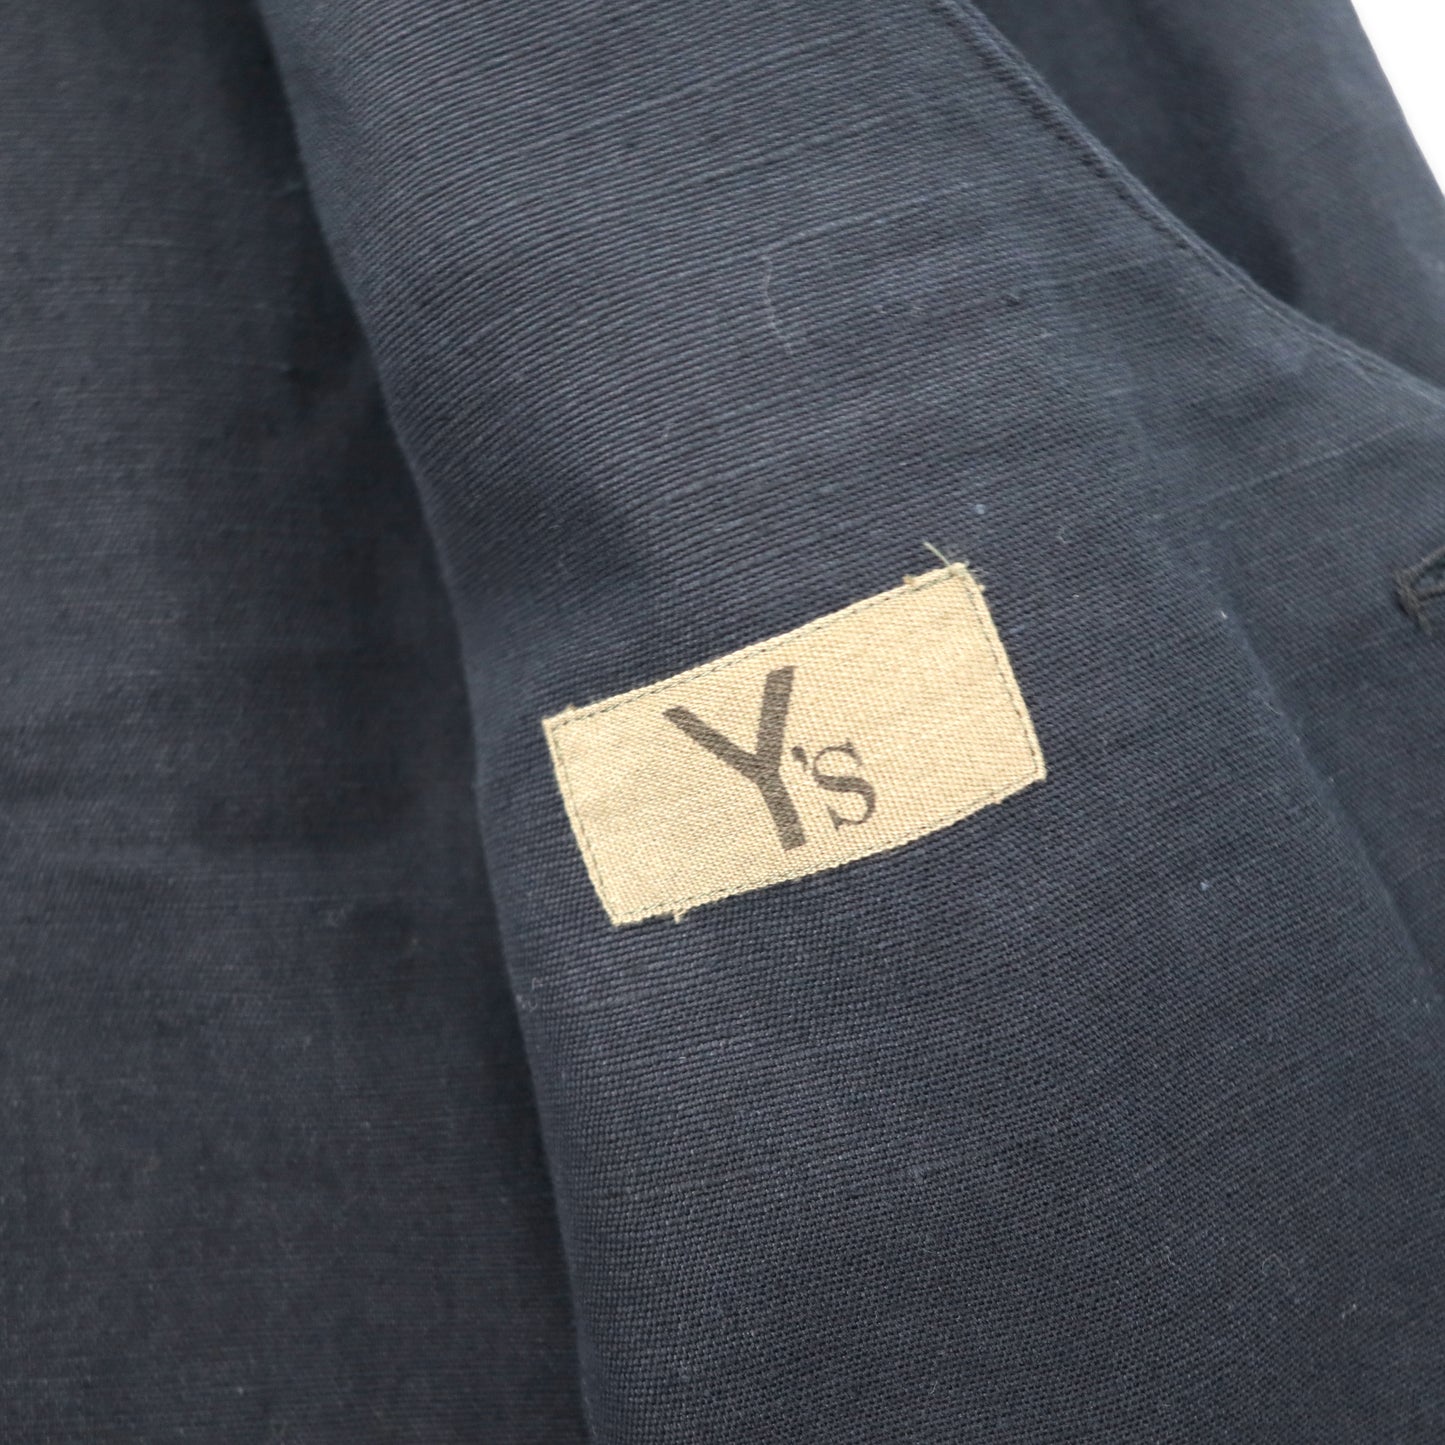 Y's (YOHJI YAMAMOTO) 1980s early Tagbox Silhouette Design Jacket